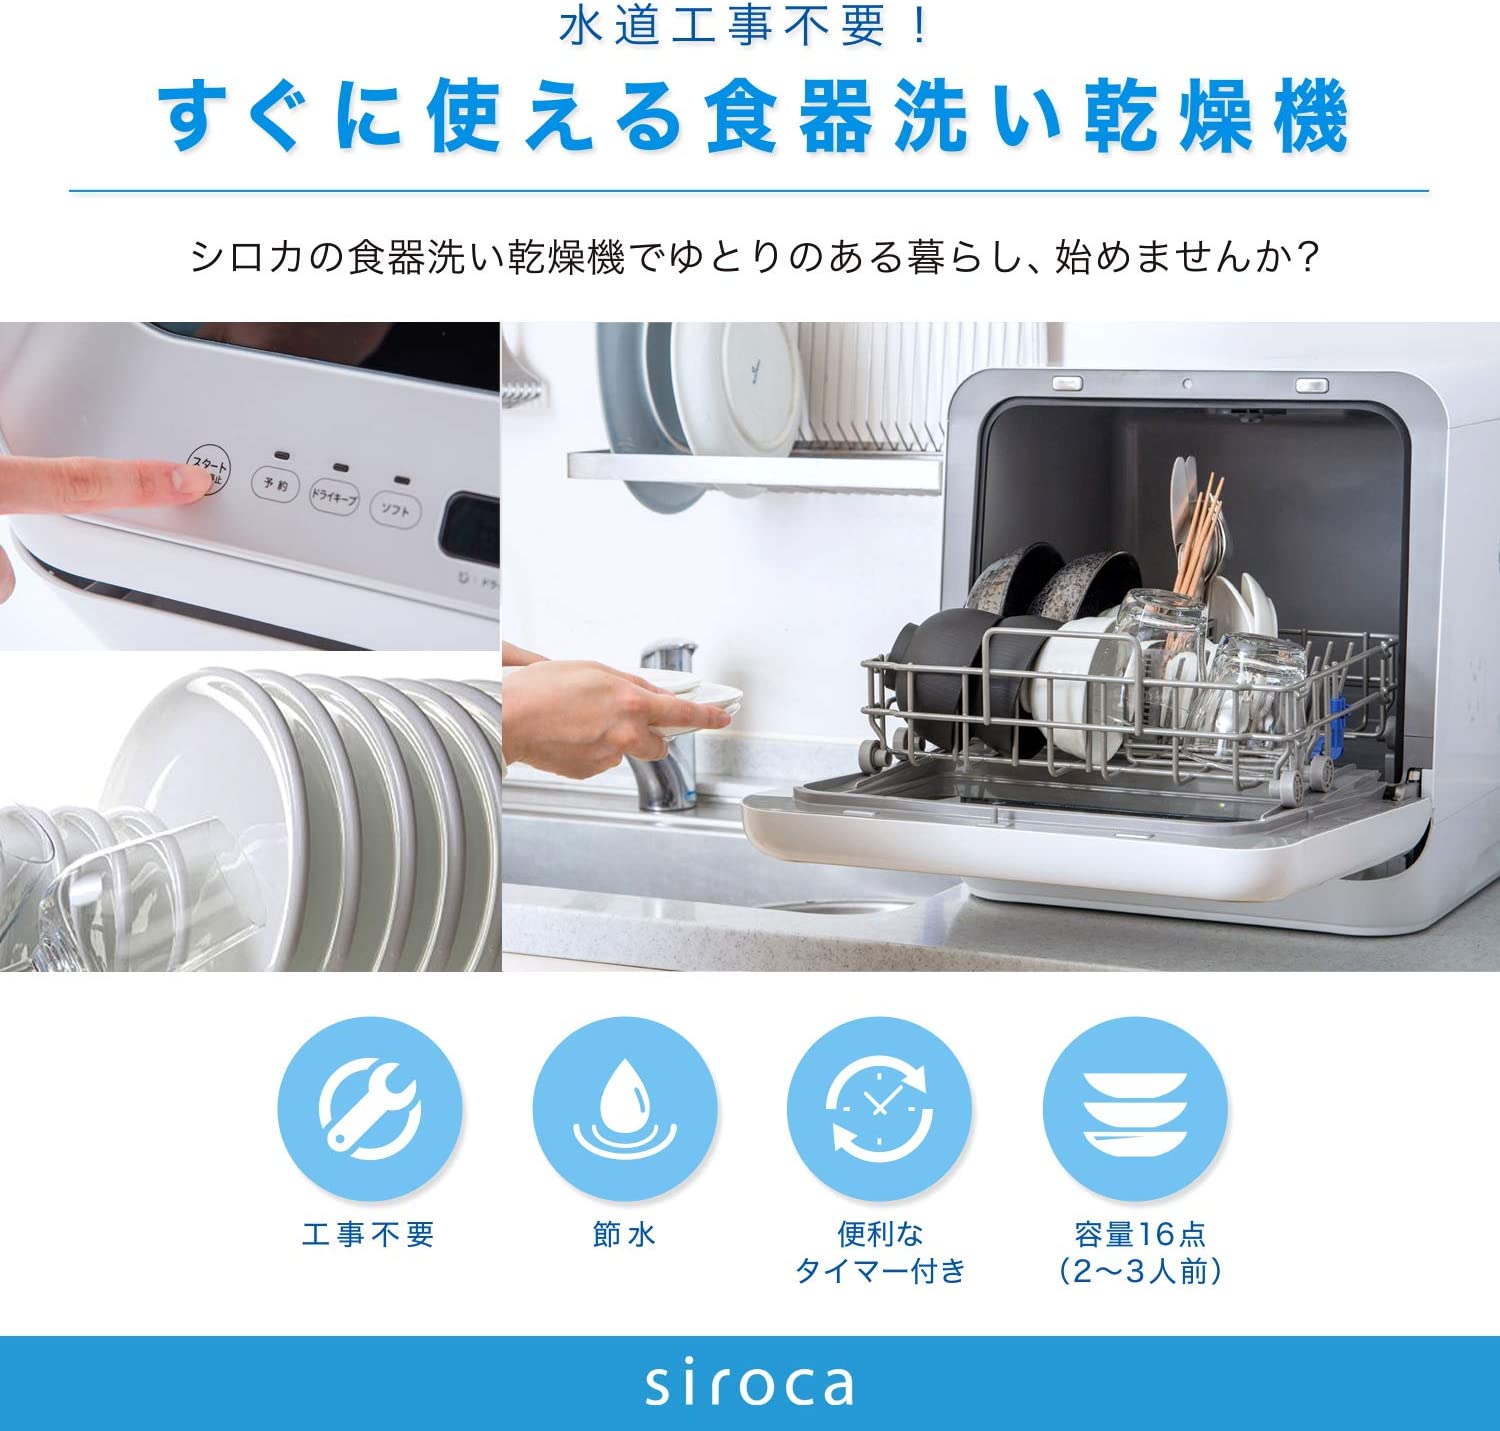 超歓迎された siroca SS-M151 食器洗い乾燥機 その他 - www.cfch.org